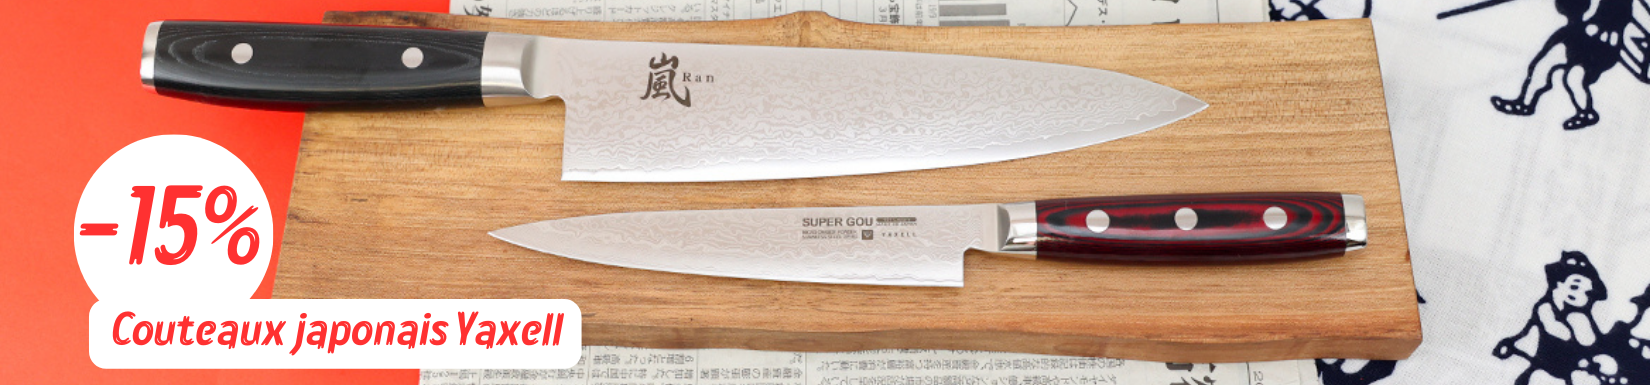 Couteau japonais yaxell, couteau de cuisine japonais polyvalent